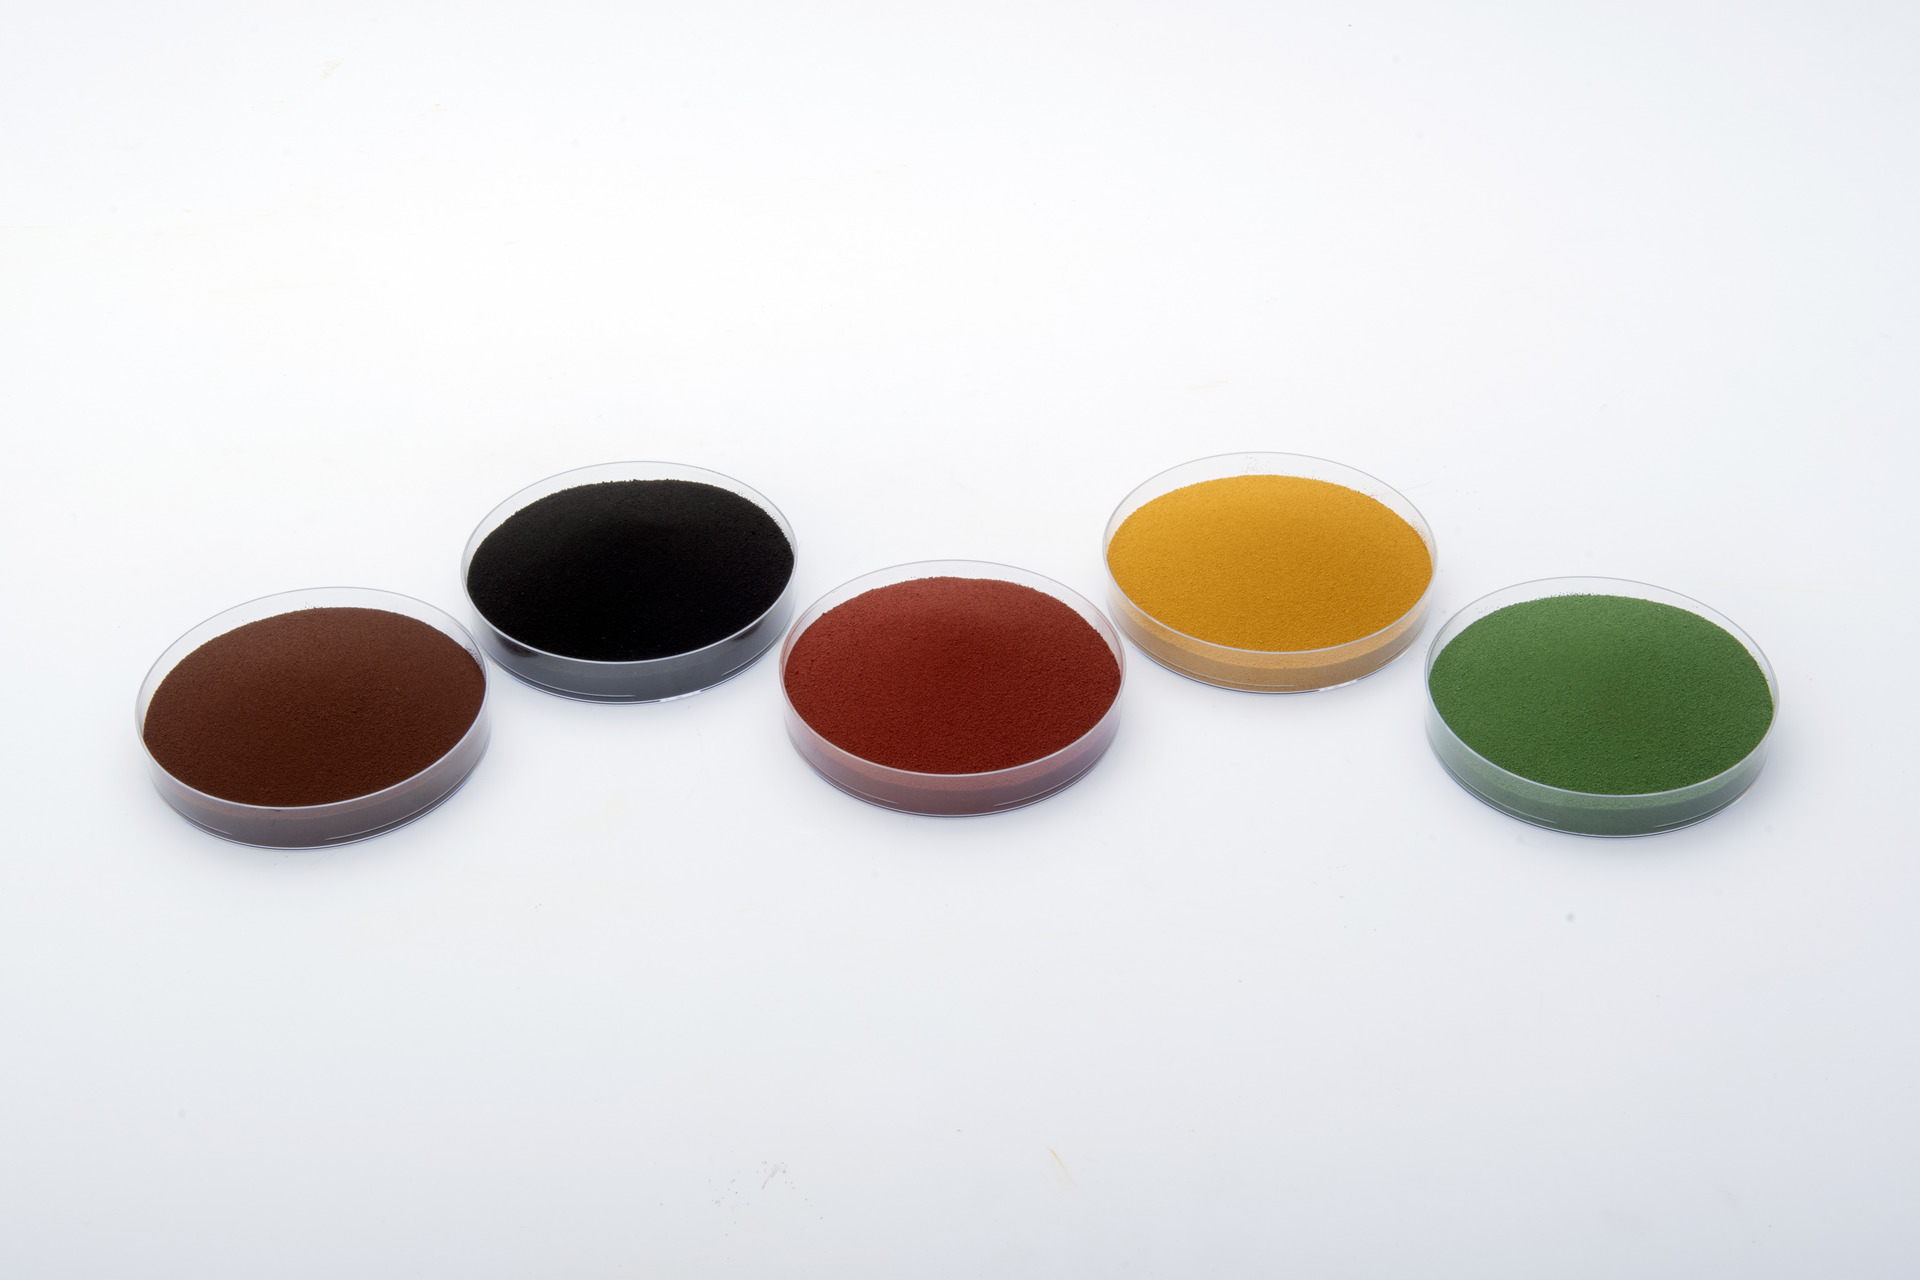 bayferrox color pigments in petri dishes